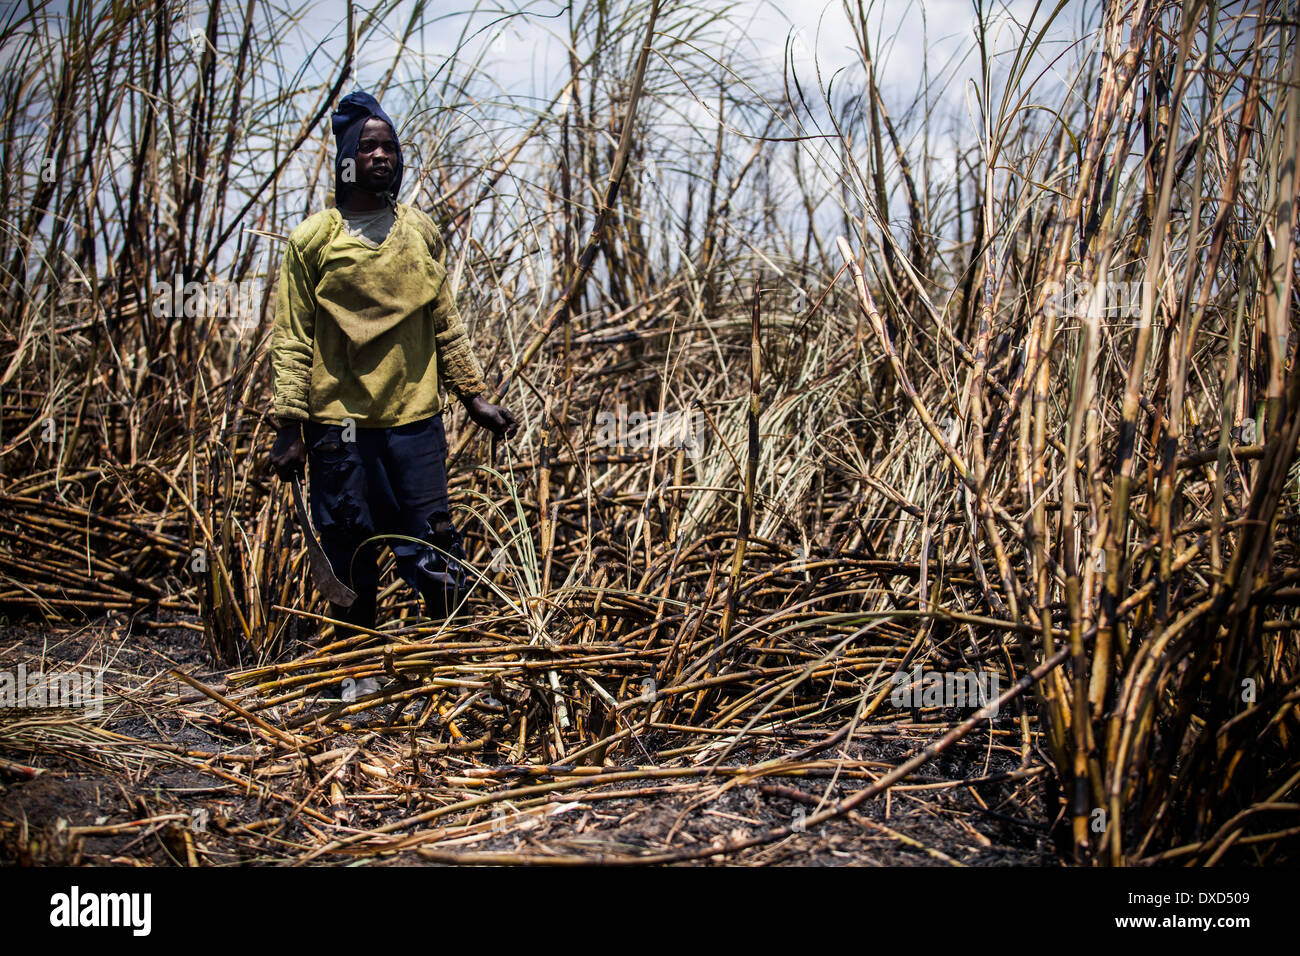 Los jornaleros de la caña de azúcar la cosecha de la caña de azúcar en una plantación en Malawi, Africa. Foto de stock